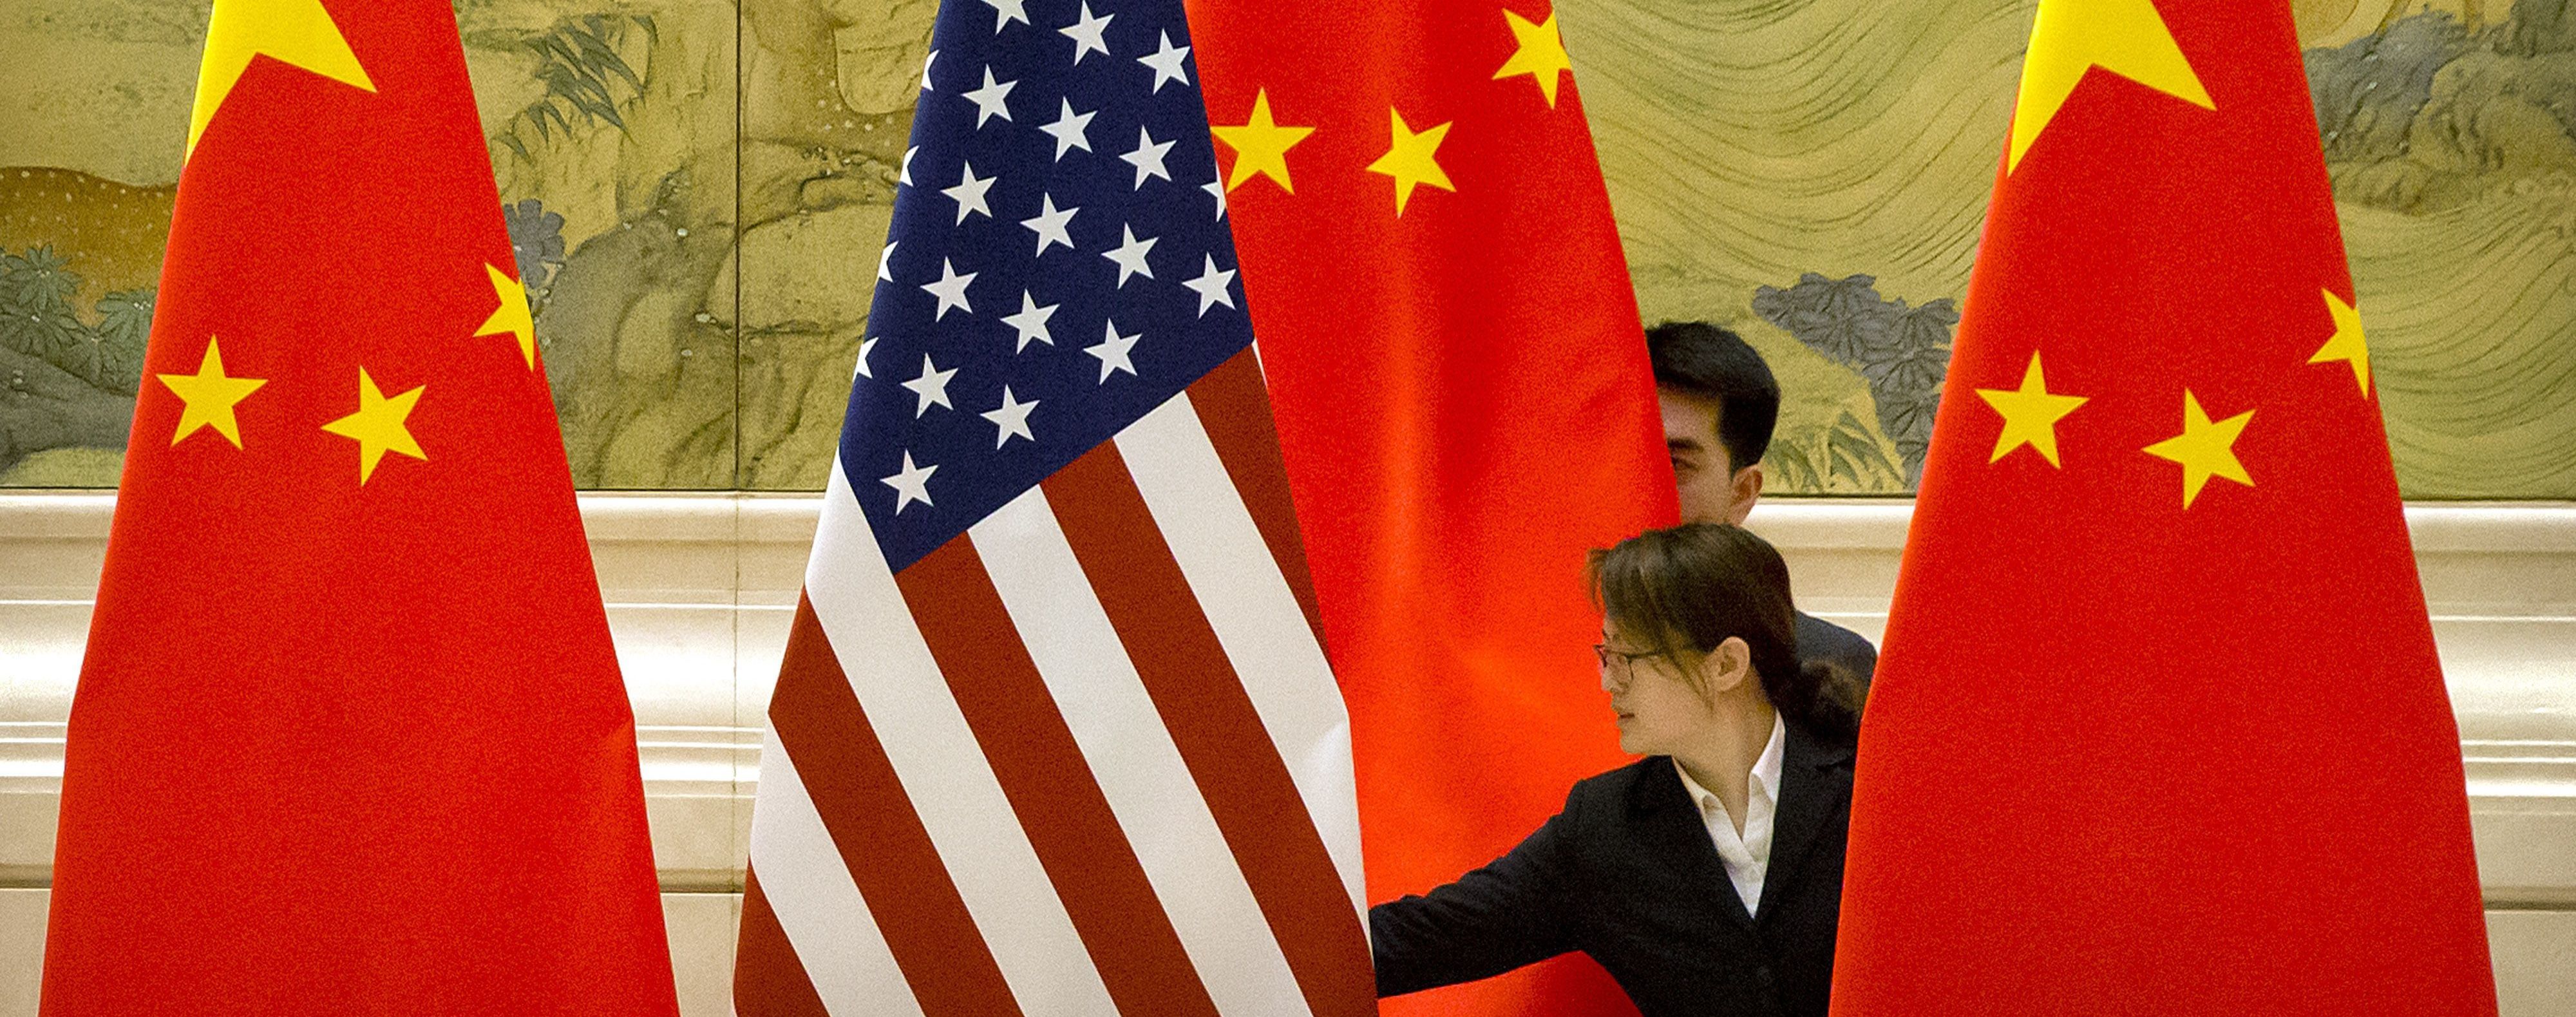 США и Китай договорились возобновить военные связи — СМИ